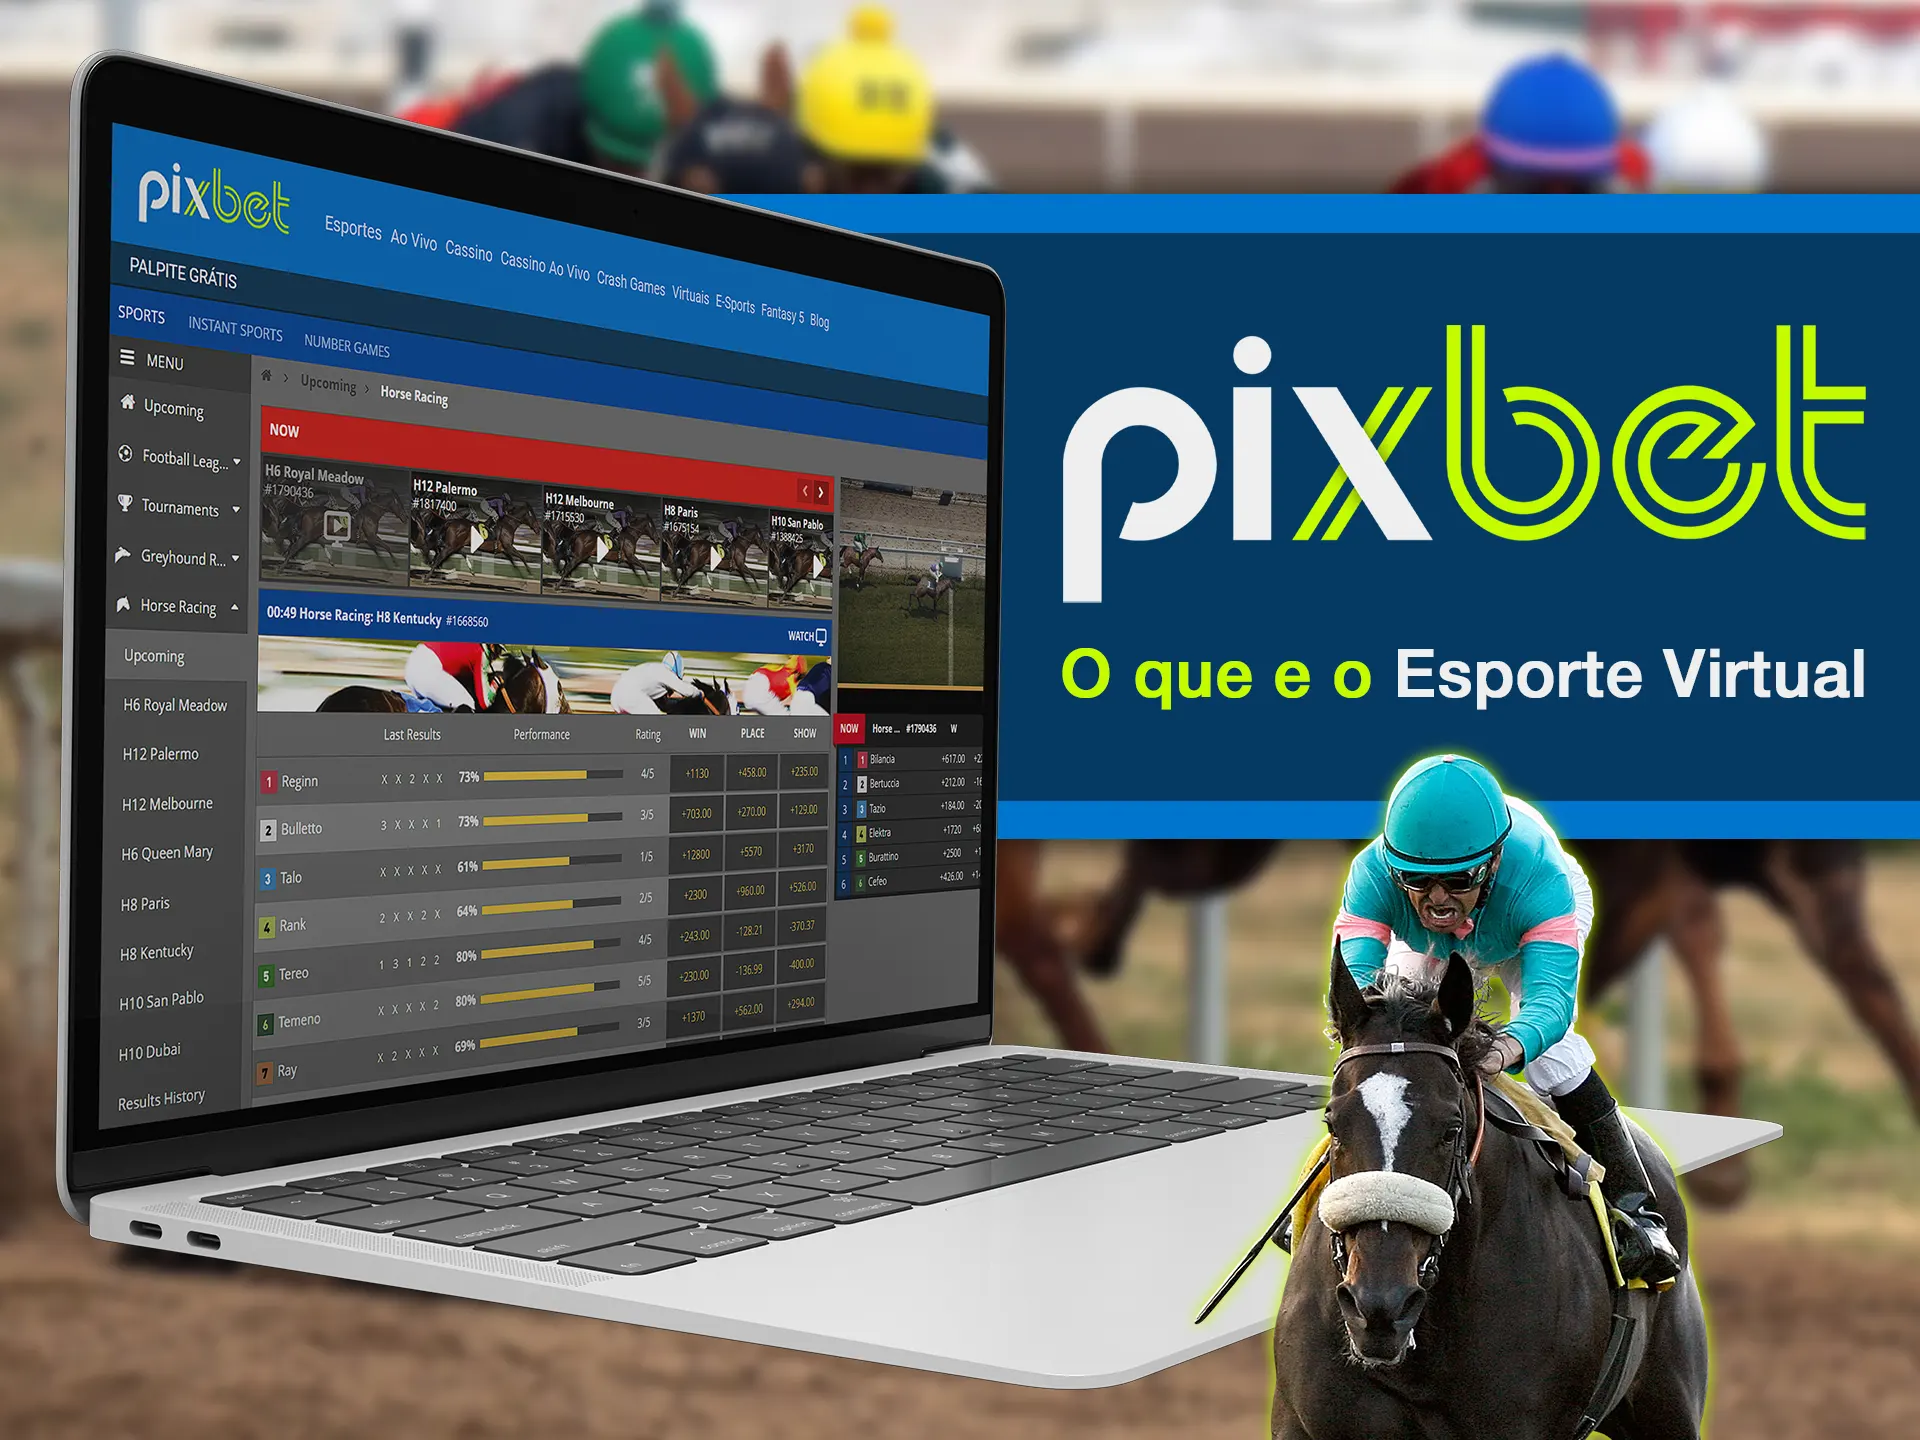 Saiba mais sobre as apostas esportivas virtuais da Pixbet na página de esportes virtuais.